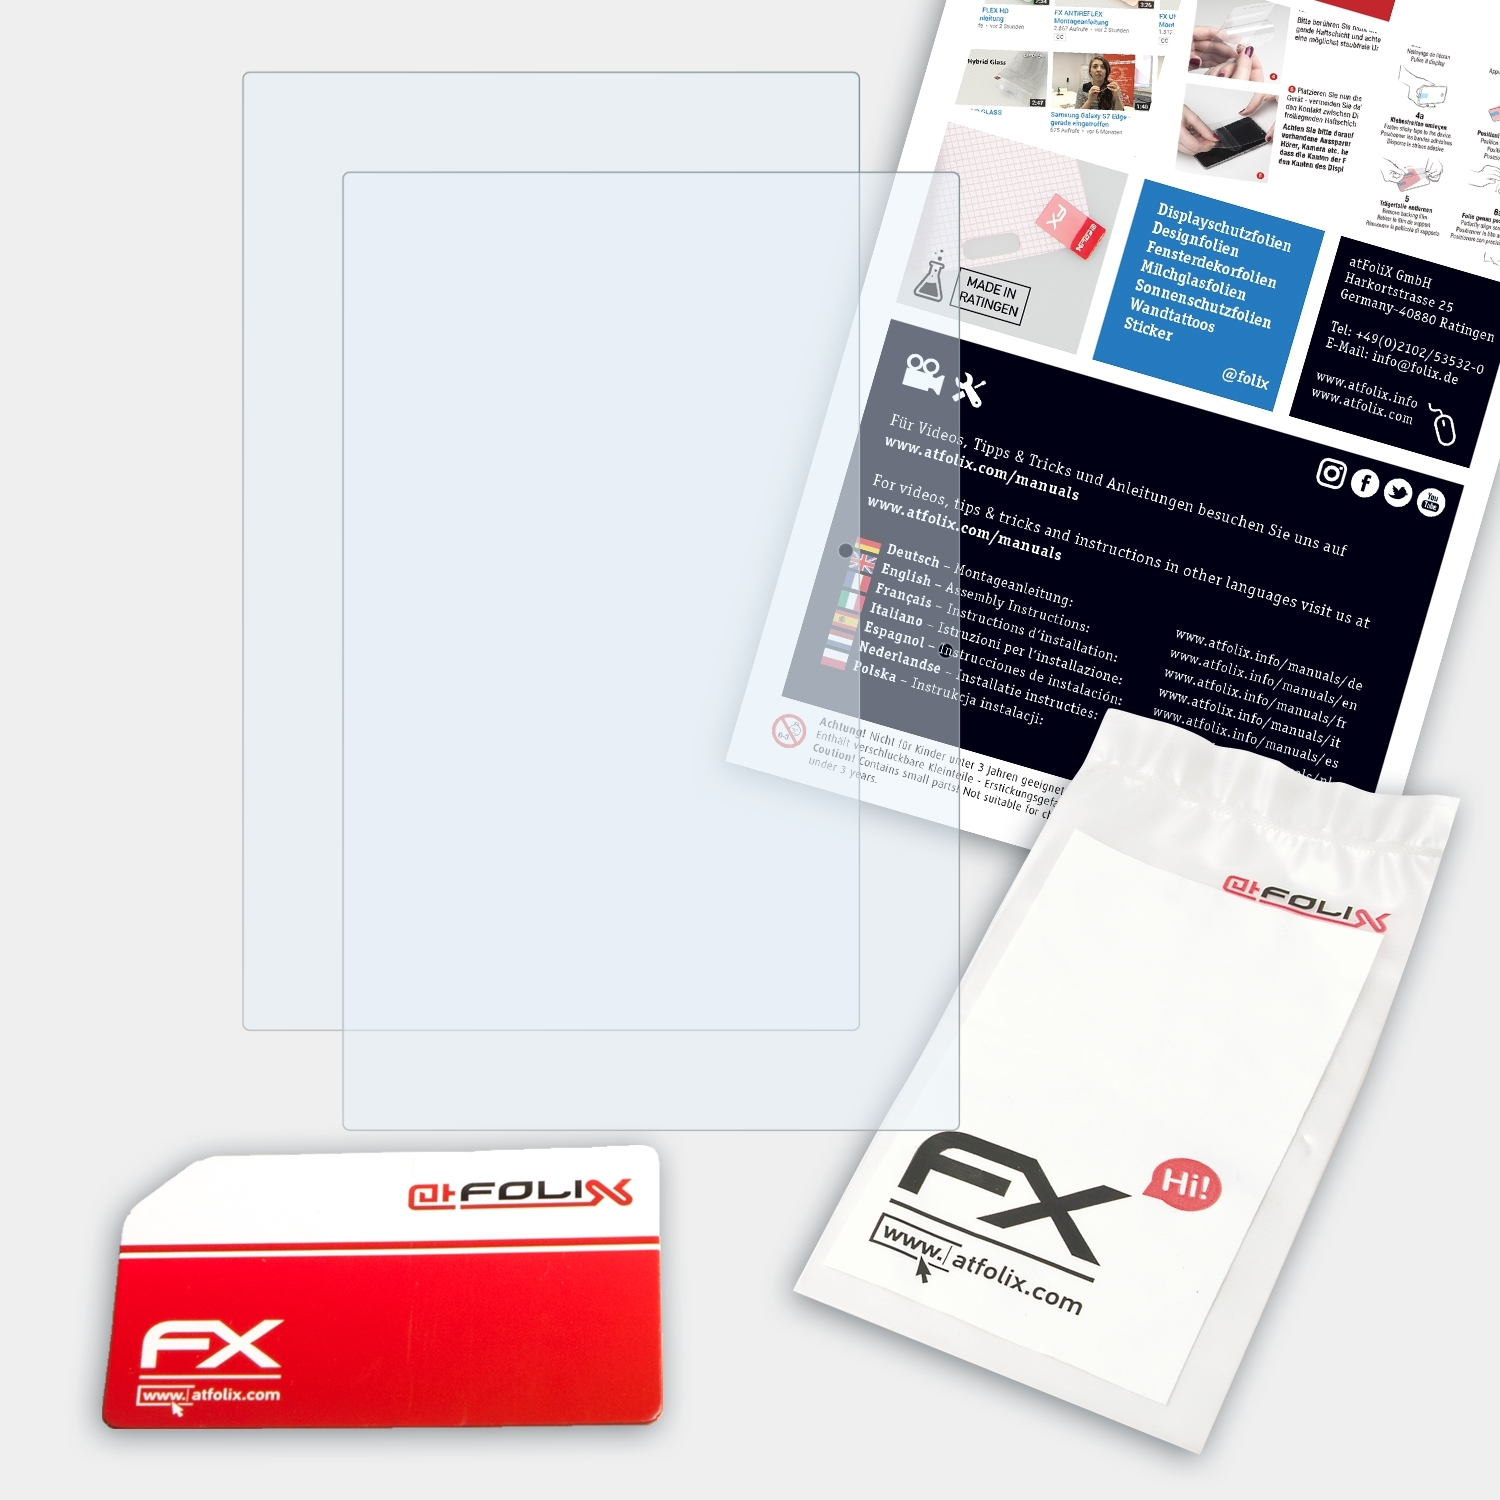 SP111-31 Spin Acer 2x inch)) FX-Clear ATFOLIX (11,6 1 Displayschutz(für